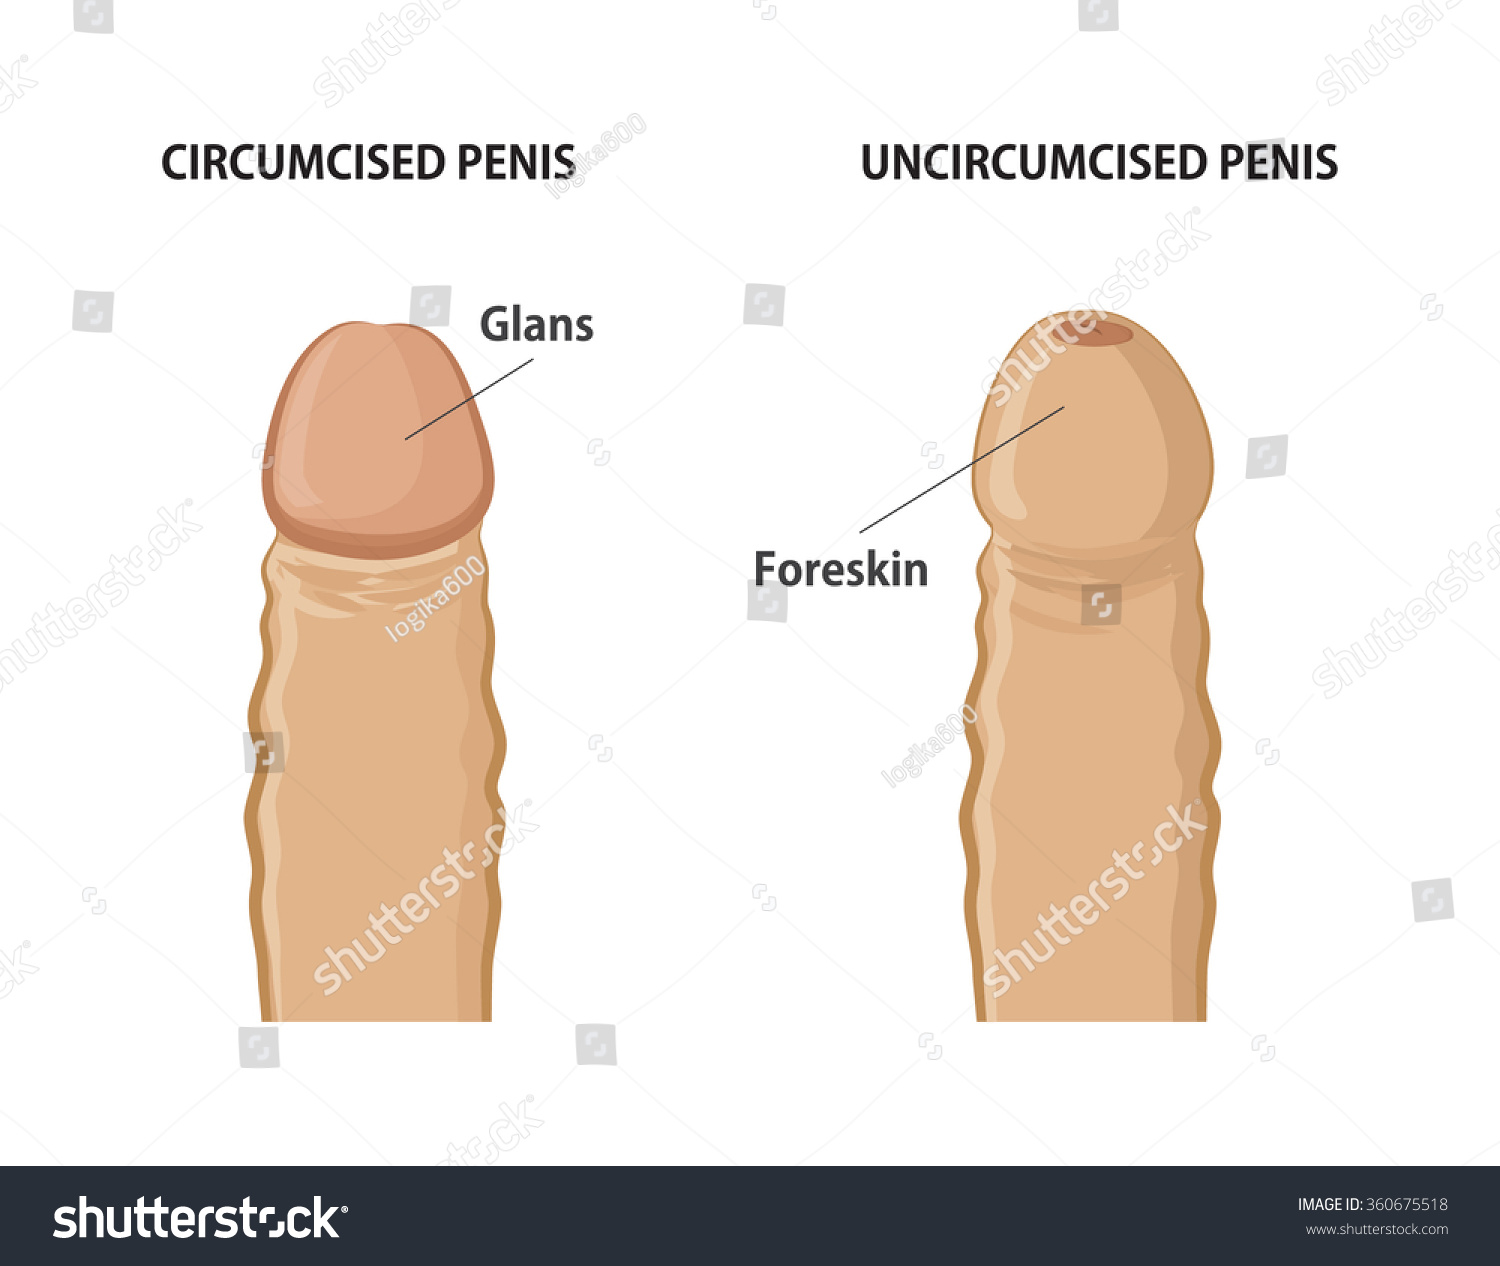 Circumcised Penis Image 86